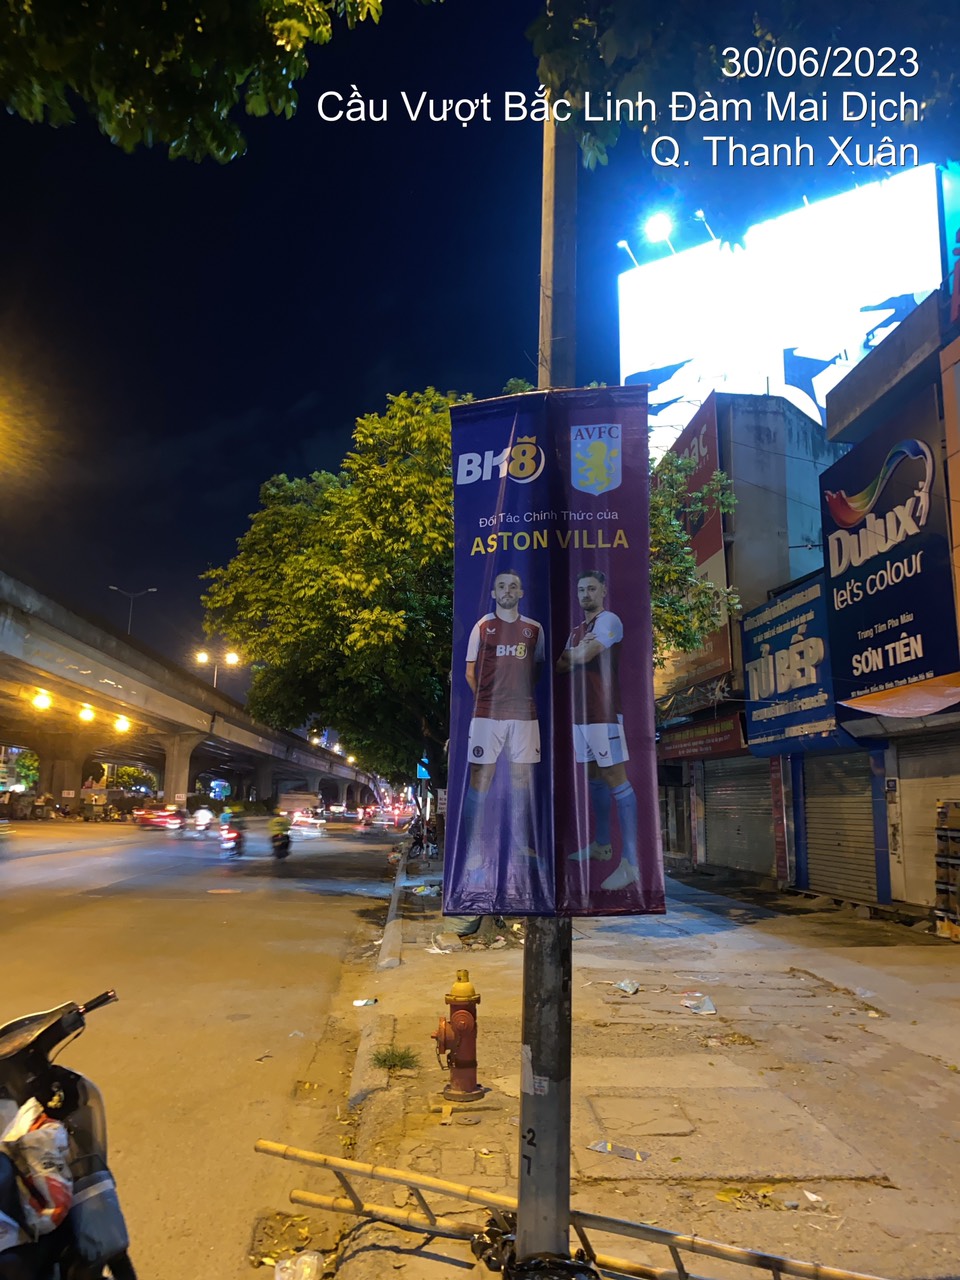 Băng rôn BK8 x Aston Villa được treo tại Hà Nội